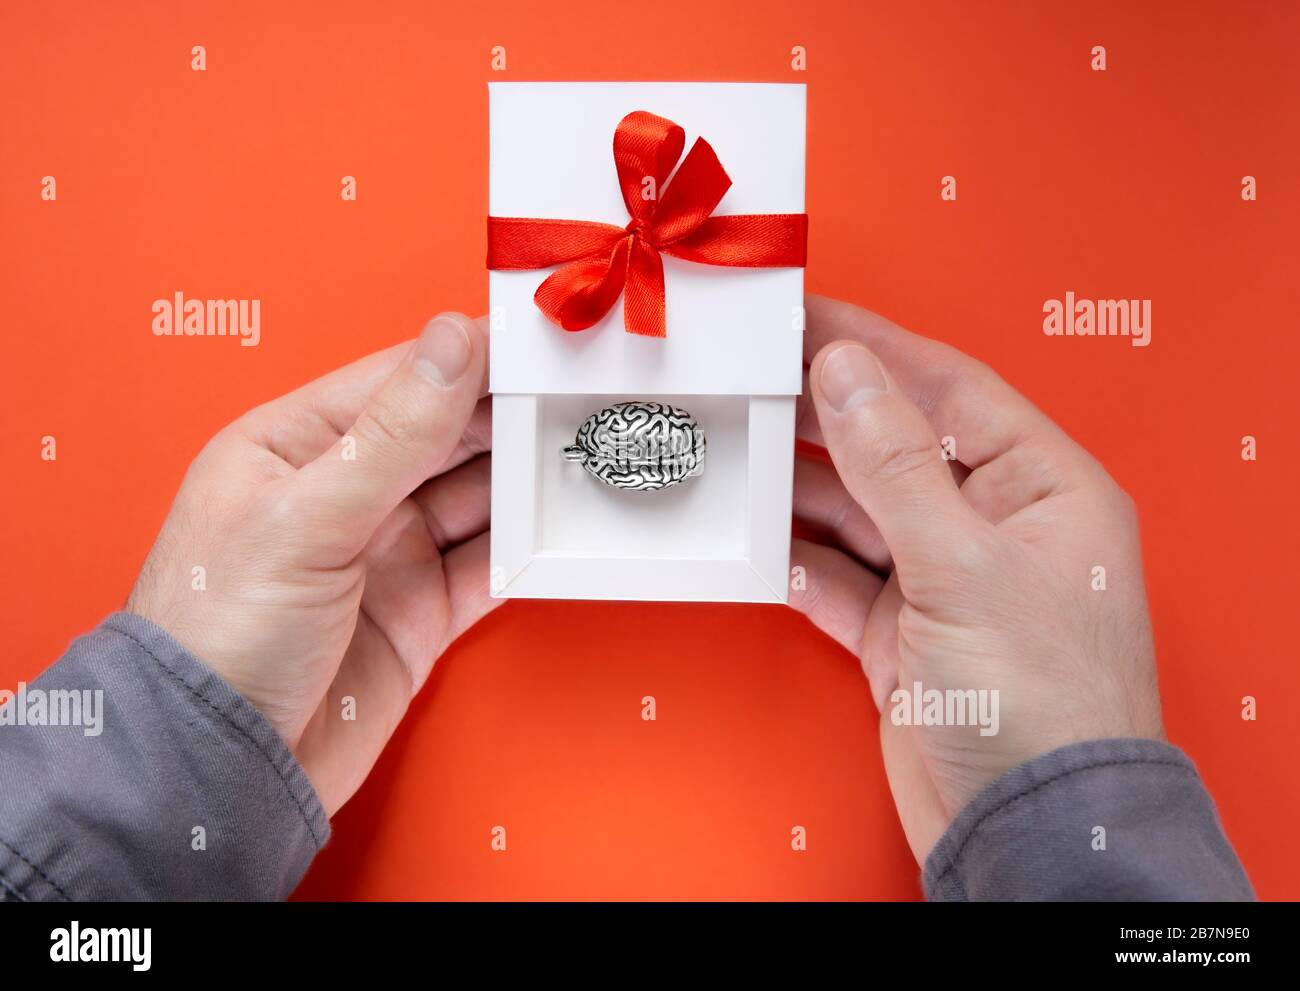 Mani maschili che tengono una scatola regalo bianca aperta a metà con un modello in metallo di un cervello umano all'interno e un arco rosso con un nastro sulla copertura. Foto Stock